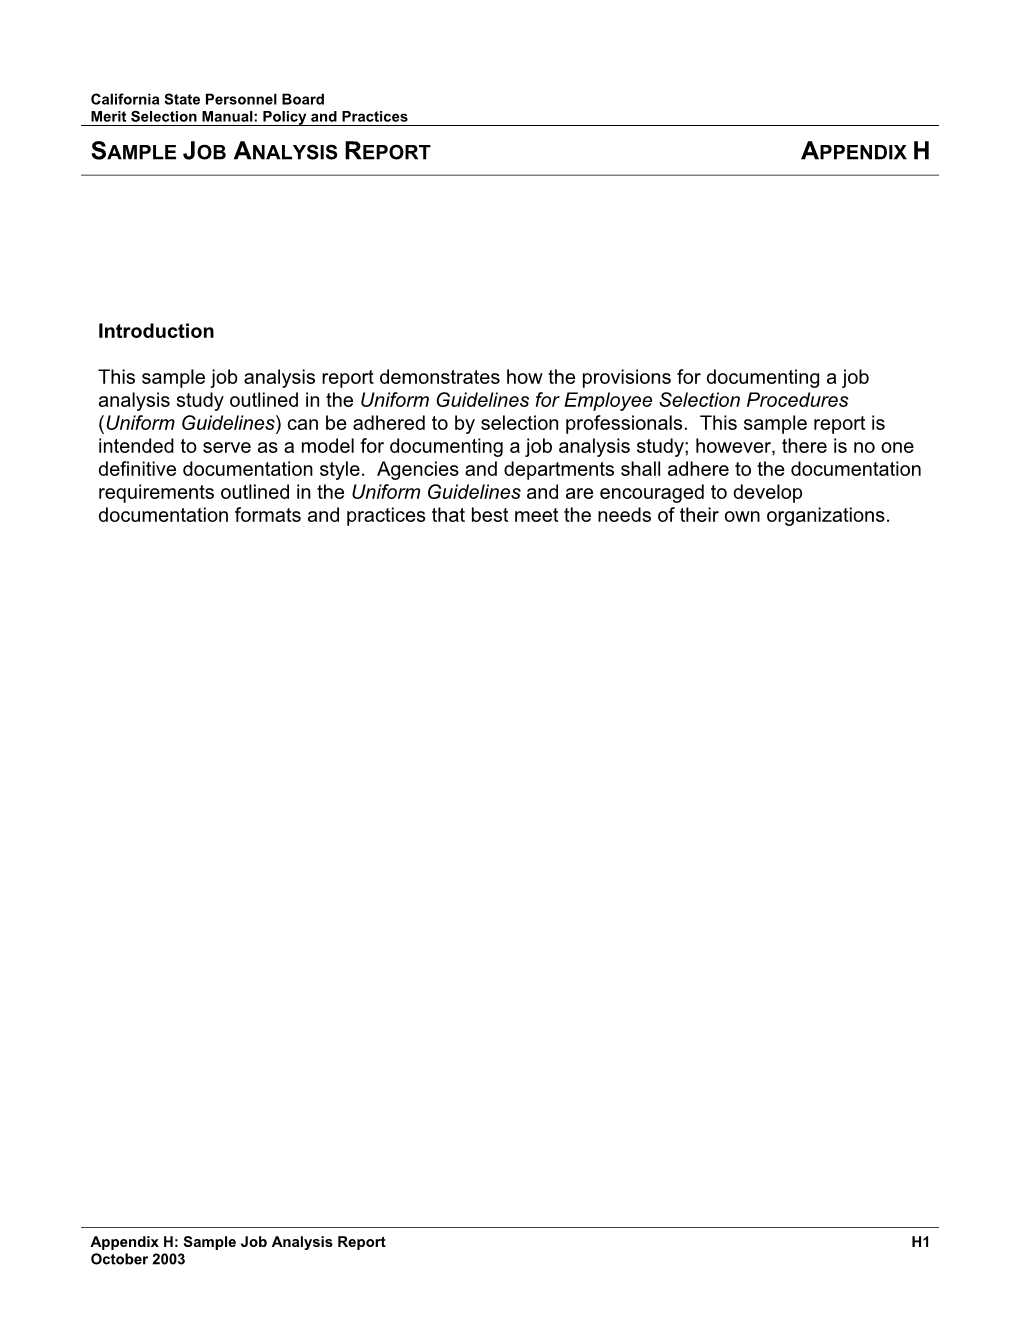 Sample Job Analysis Report Appendix H